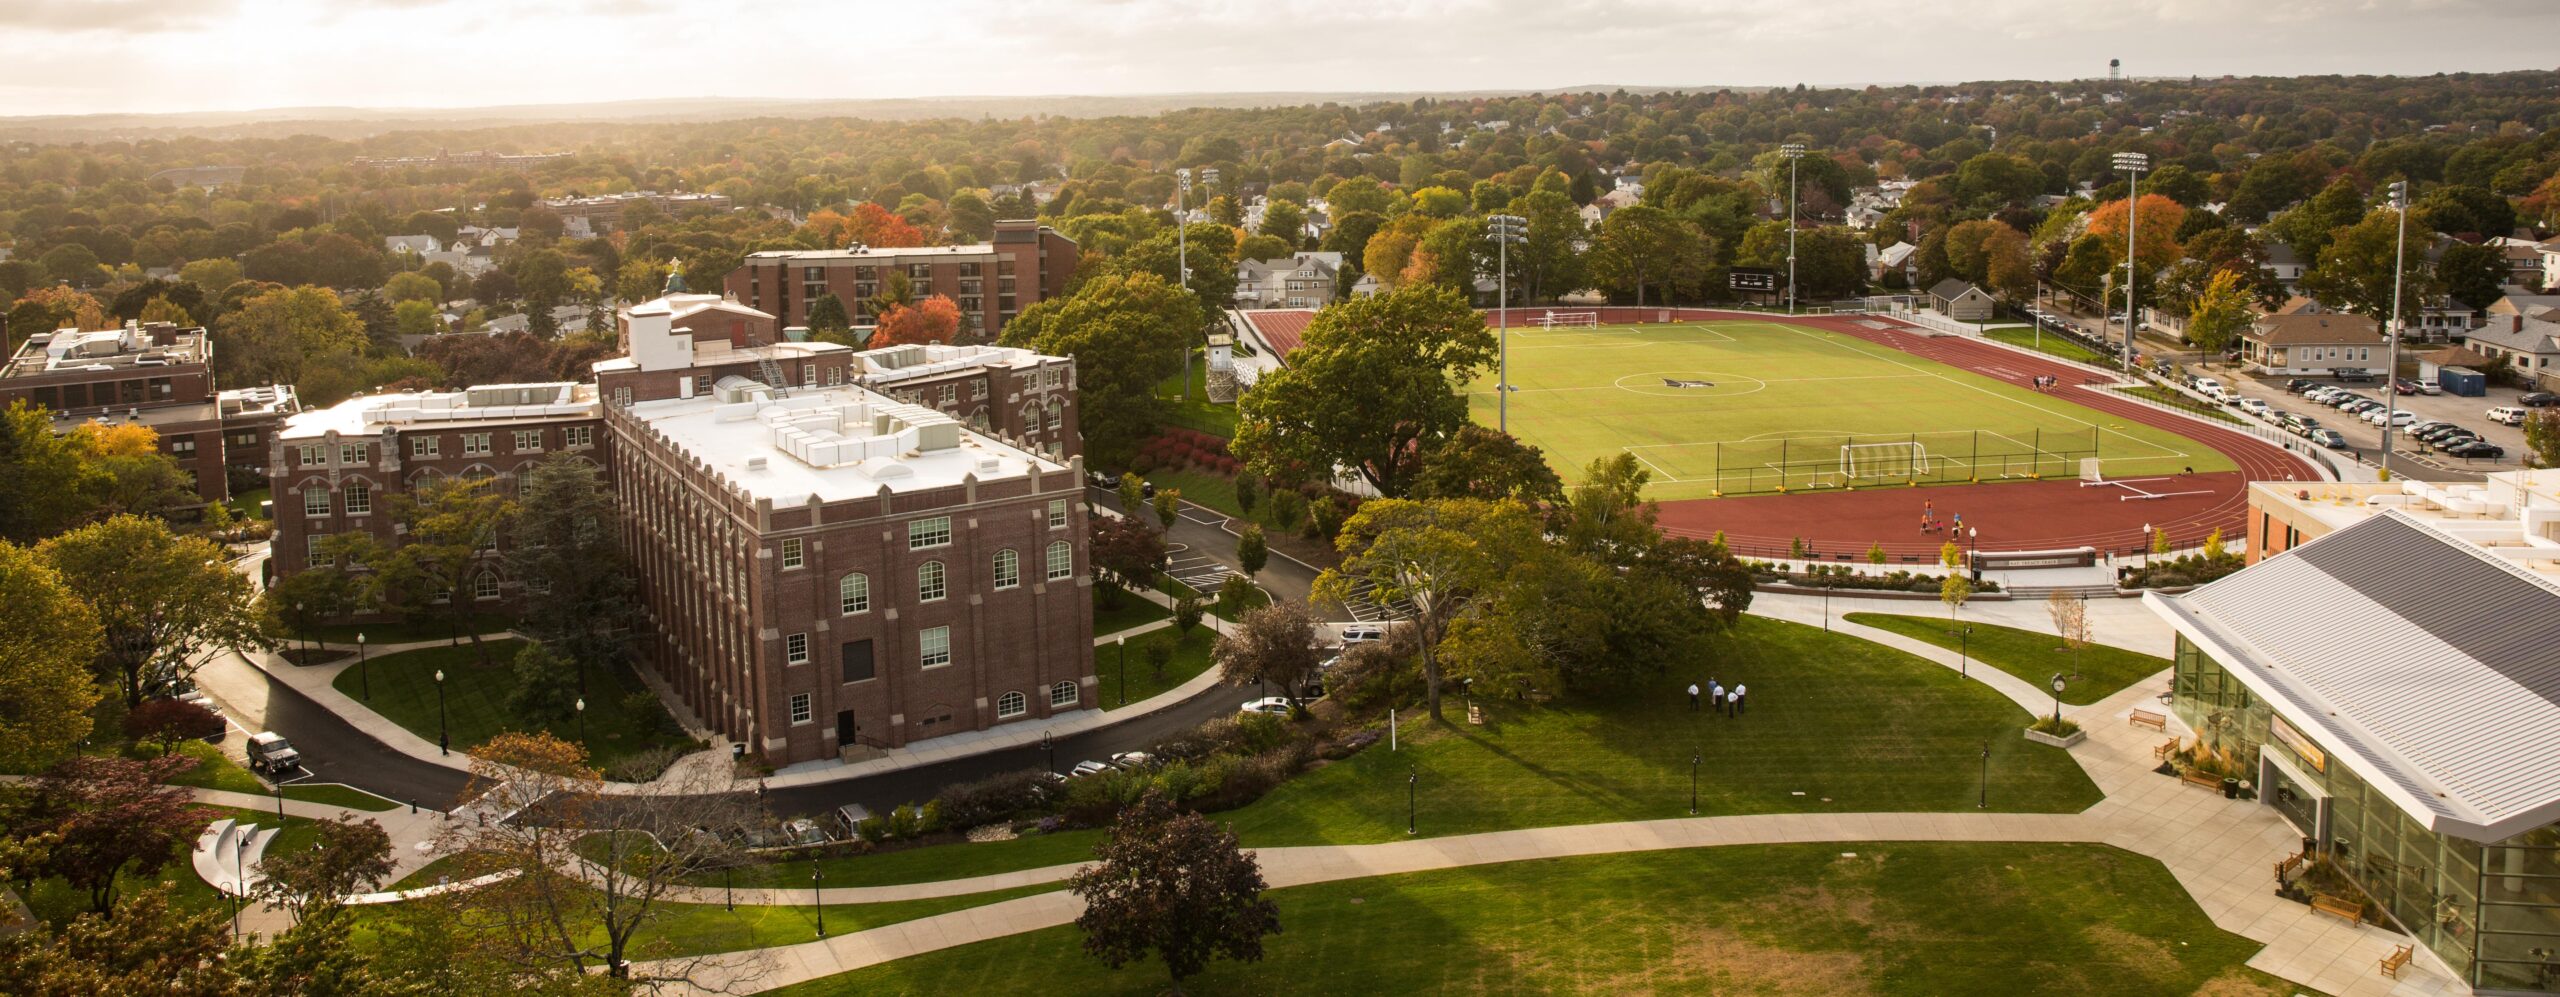 bird eye view of campus